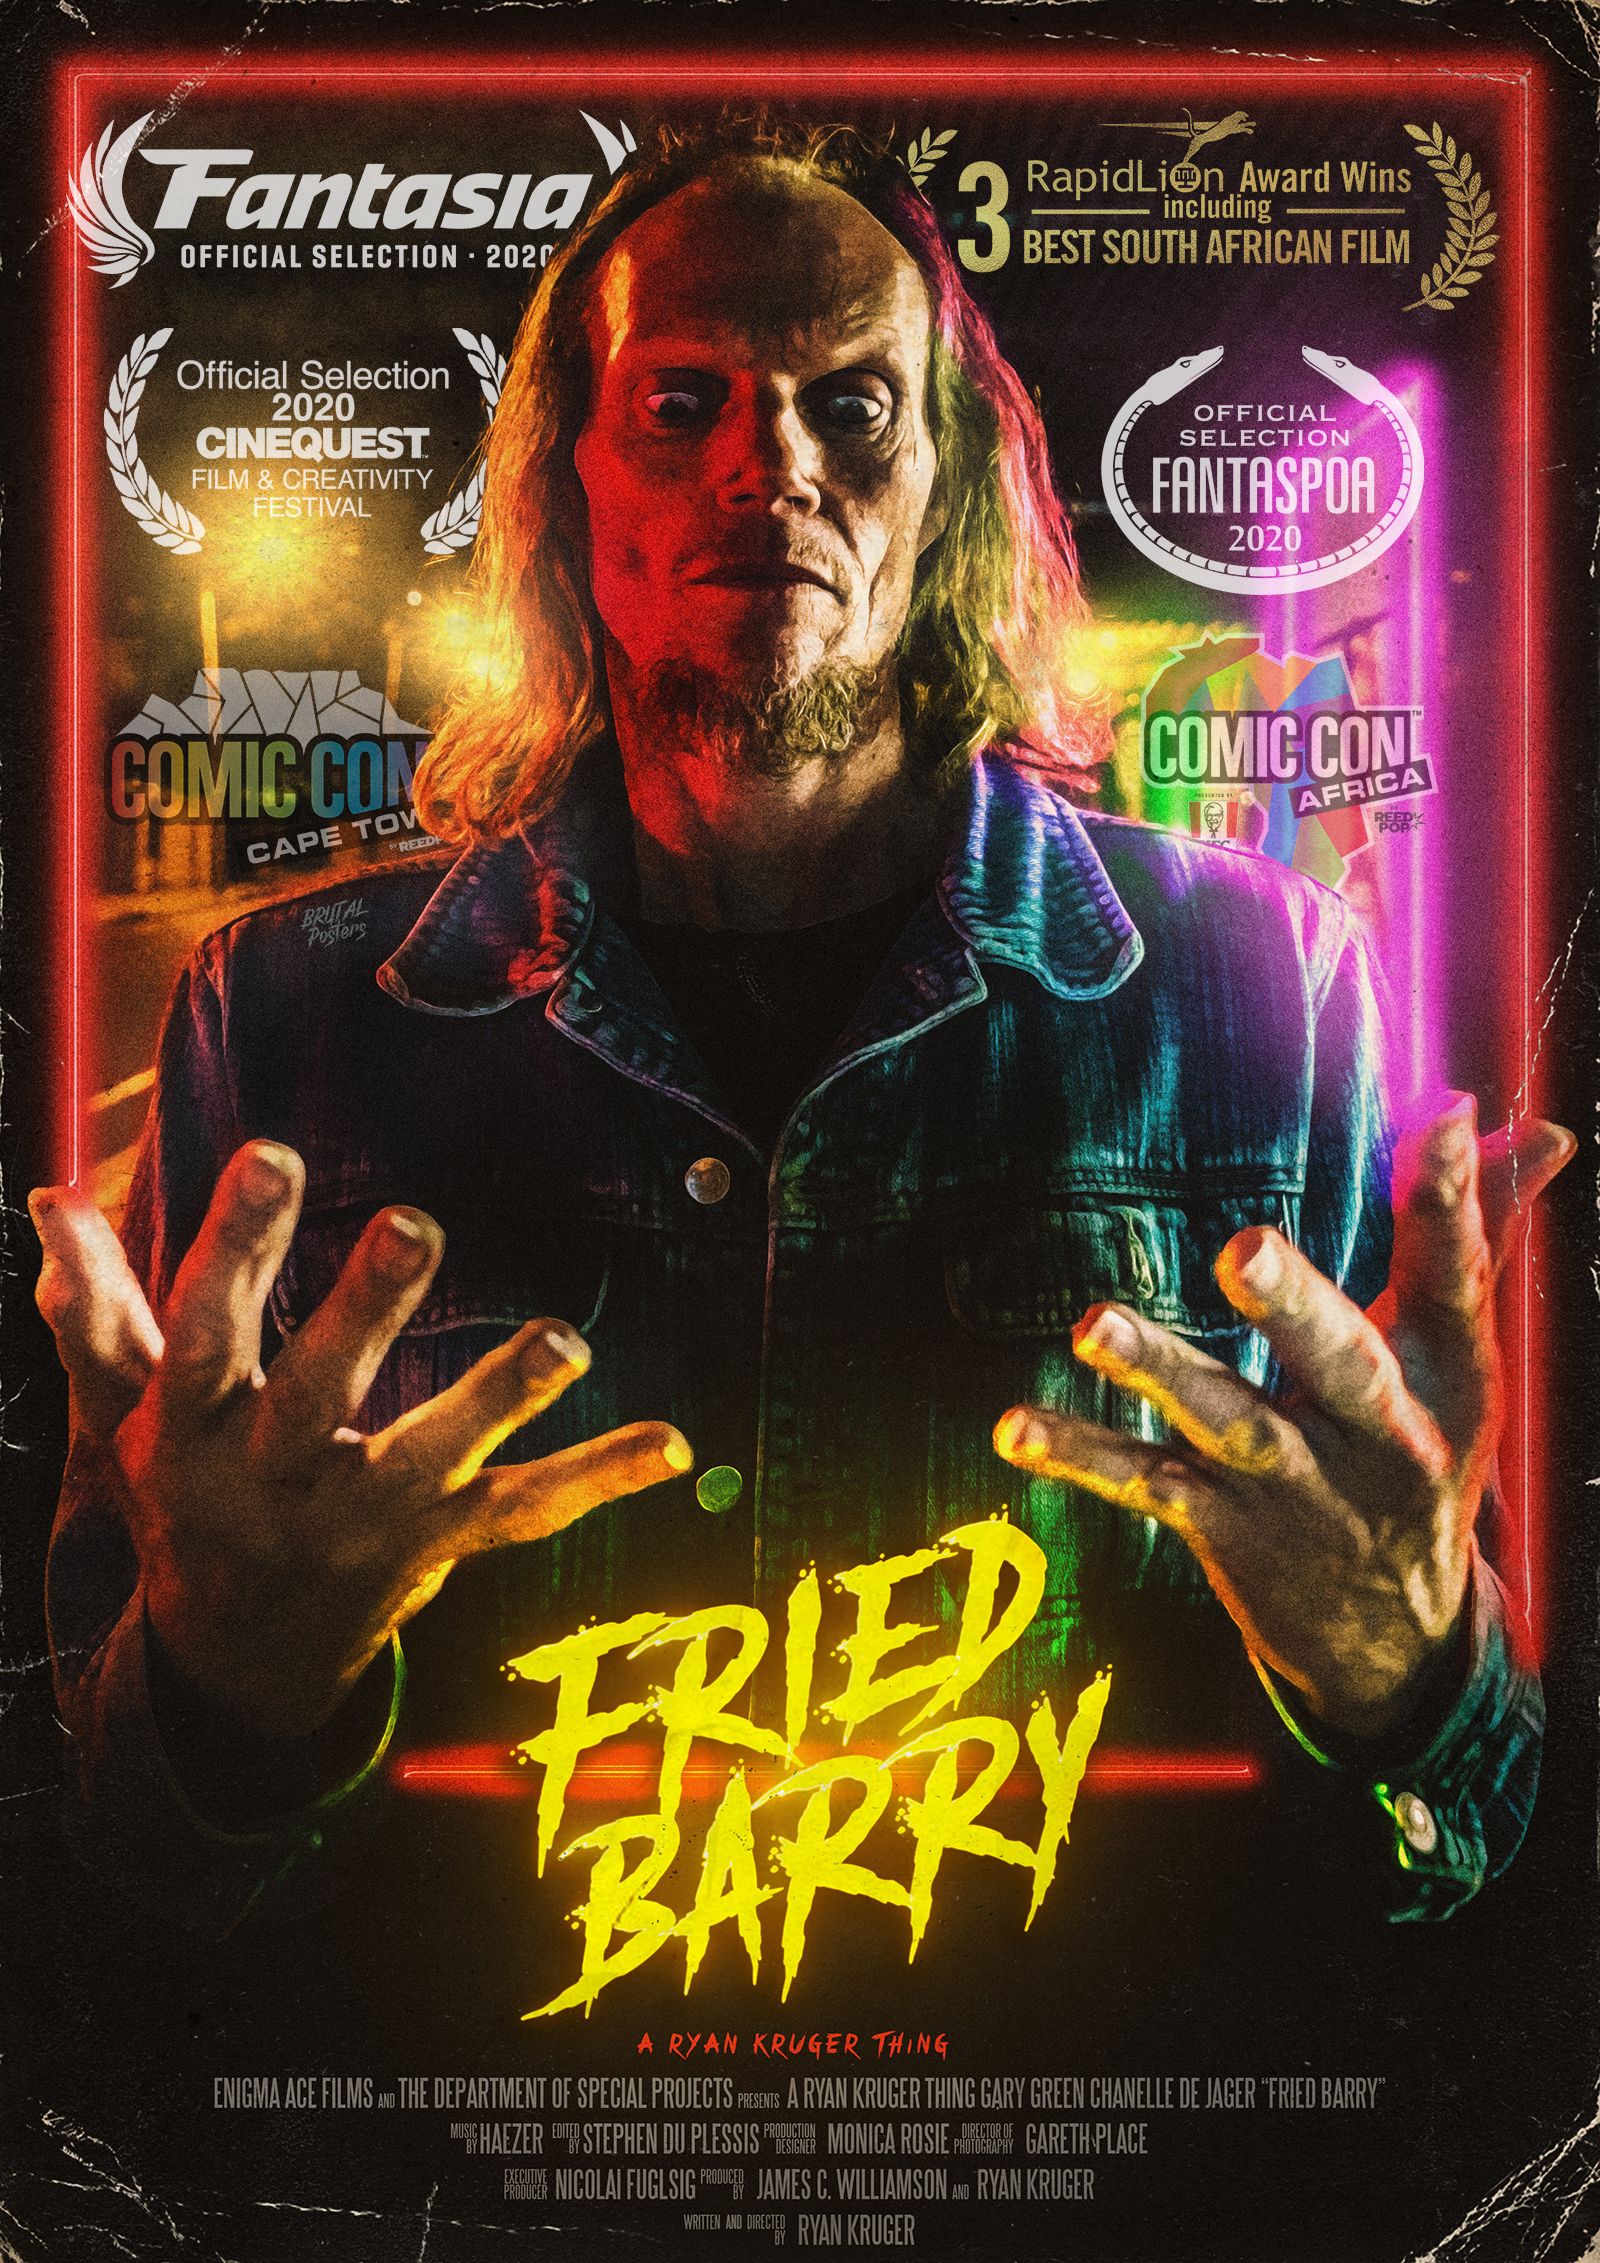 [Fantasia Digital 2020 Review] FRIED BARRY